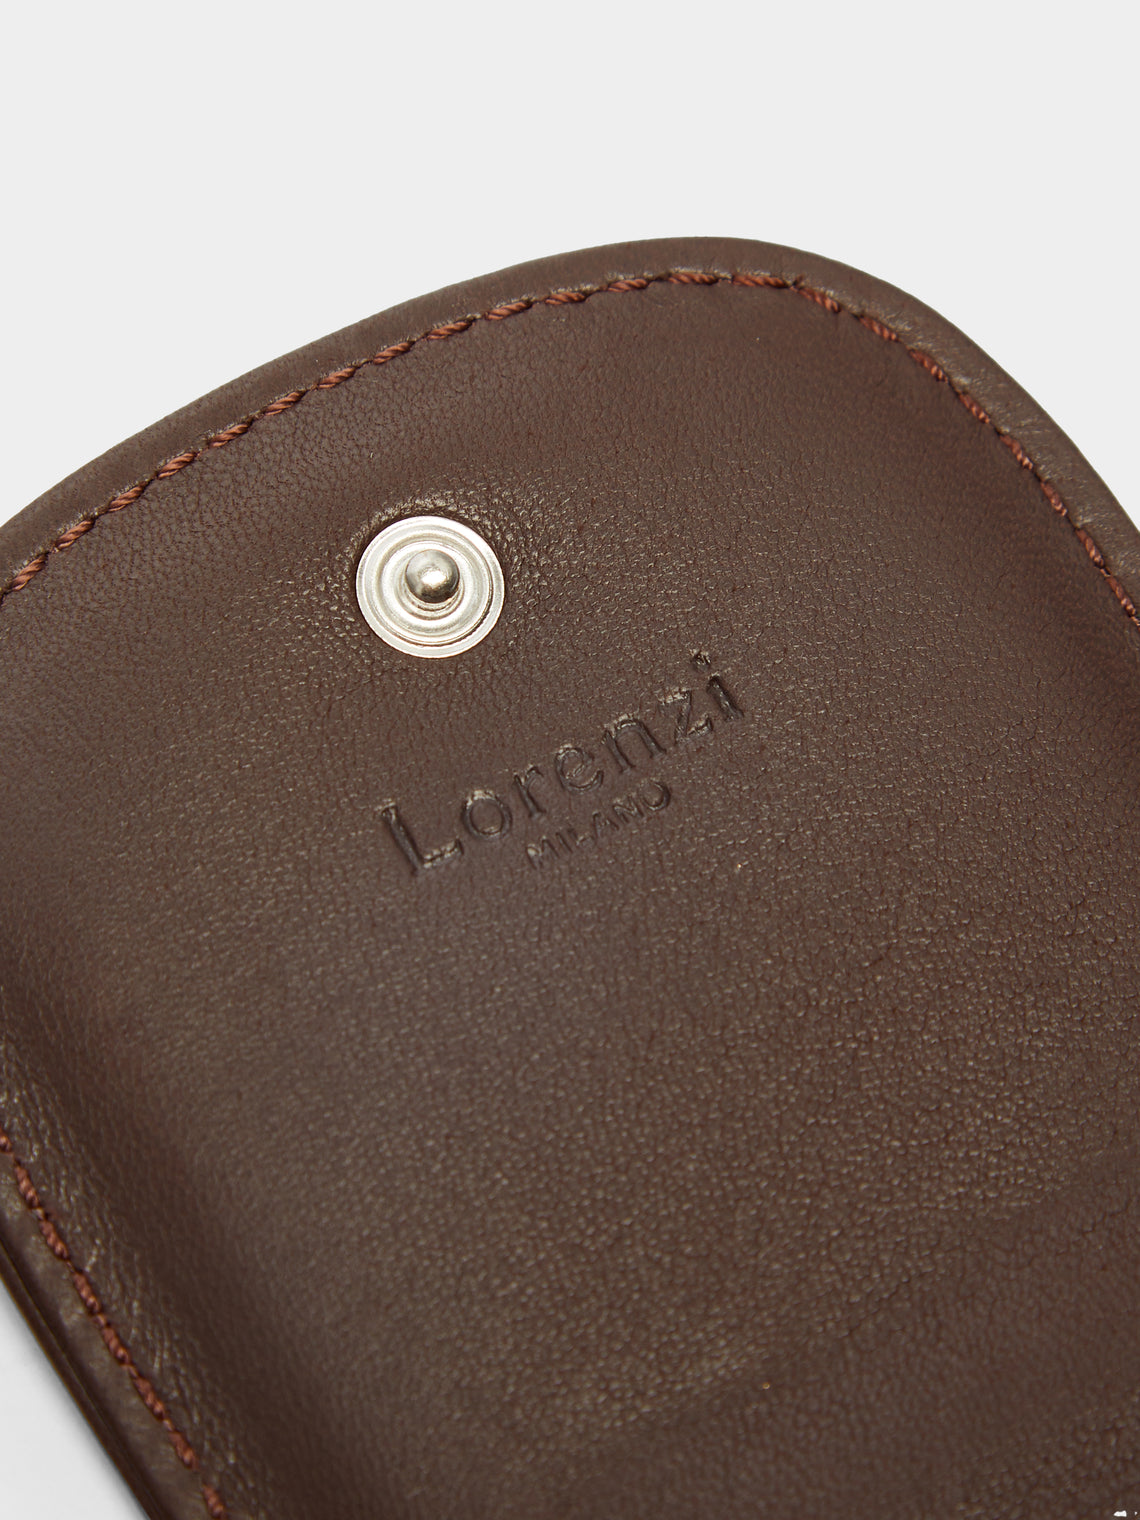 Lorenzi Milano - Leather Travel Manicure Case -  - ABASK